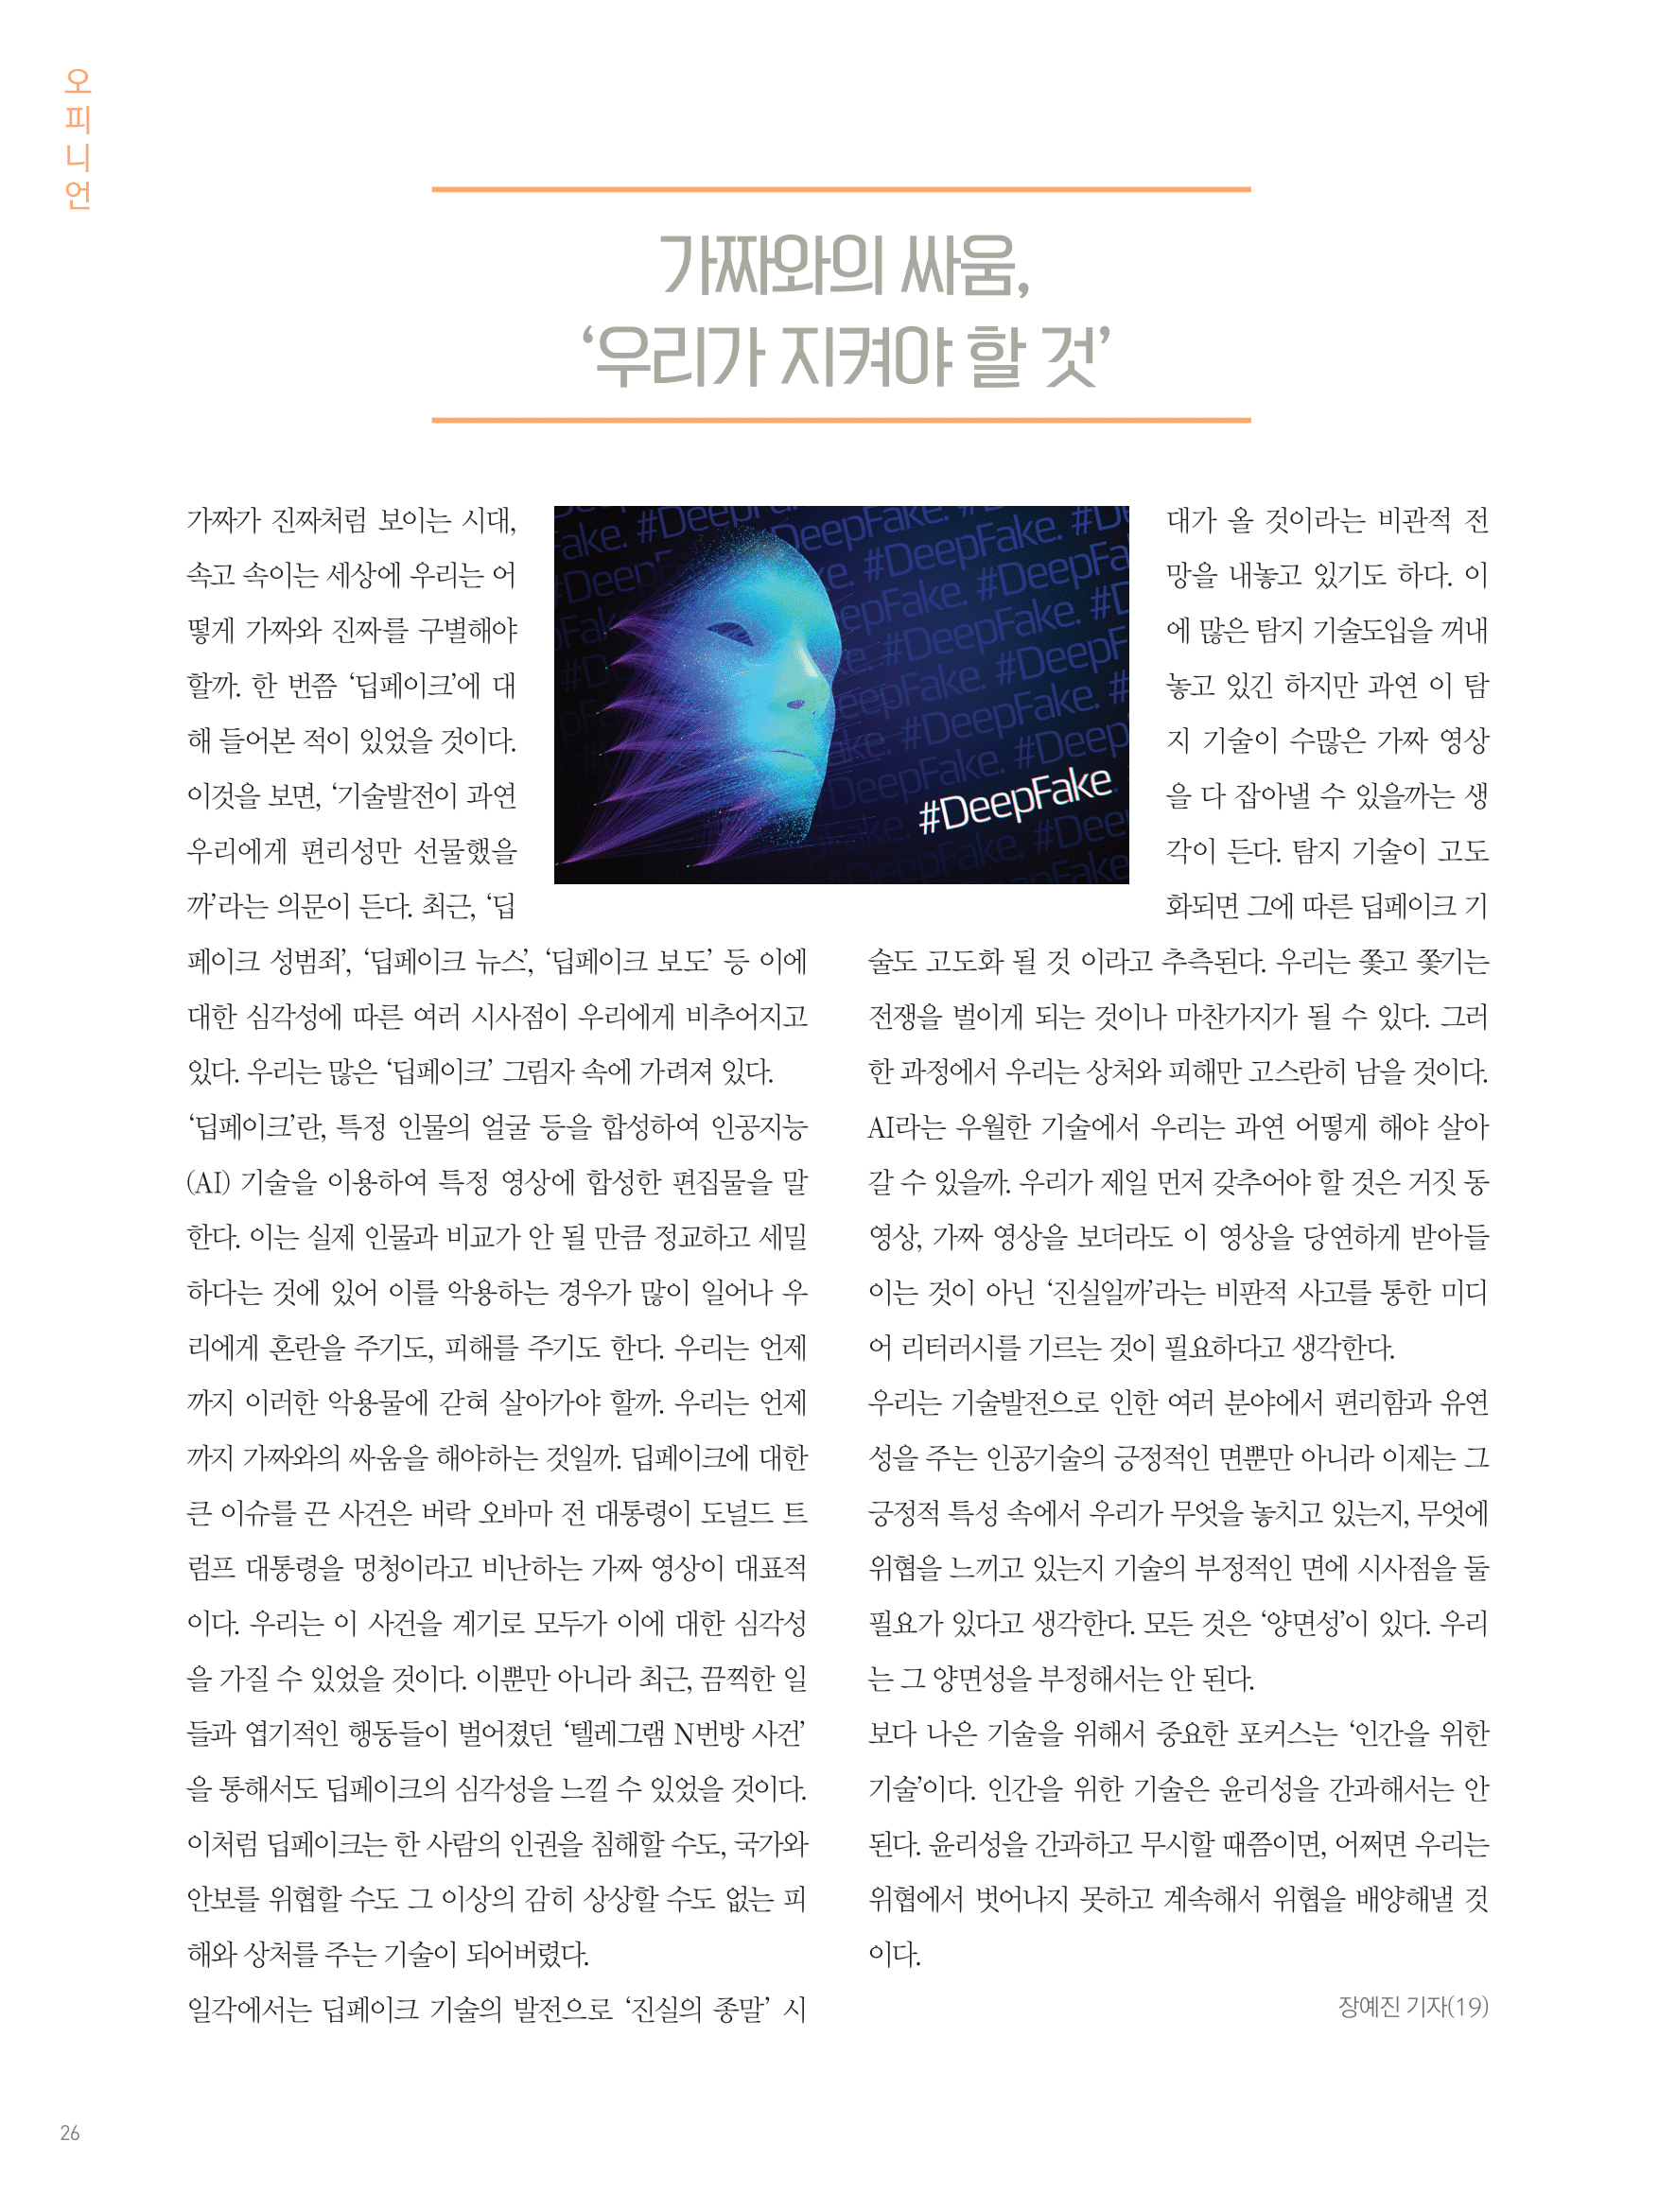 뜻새김 신문 75호 24